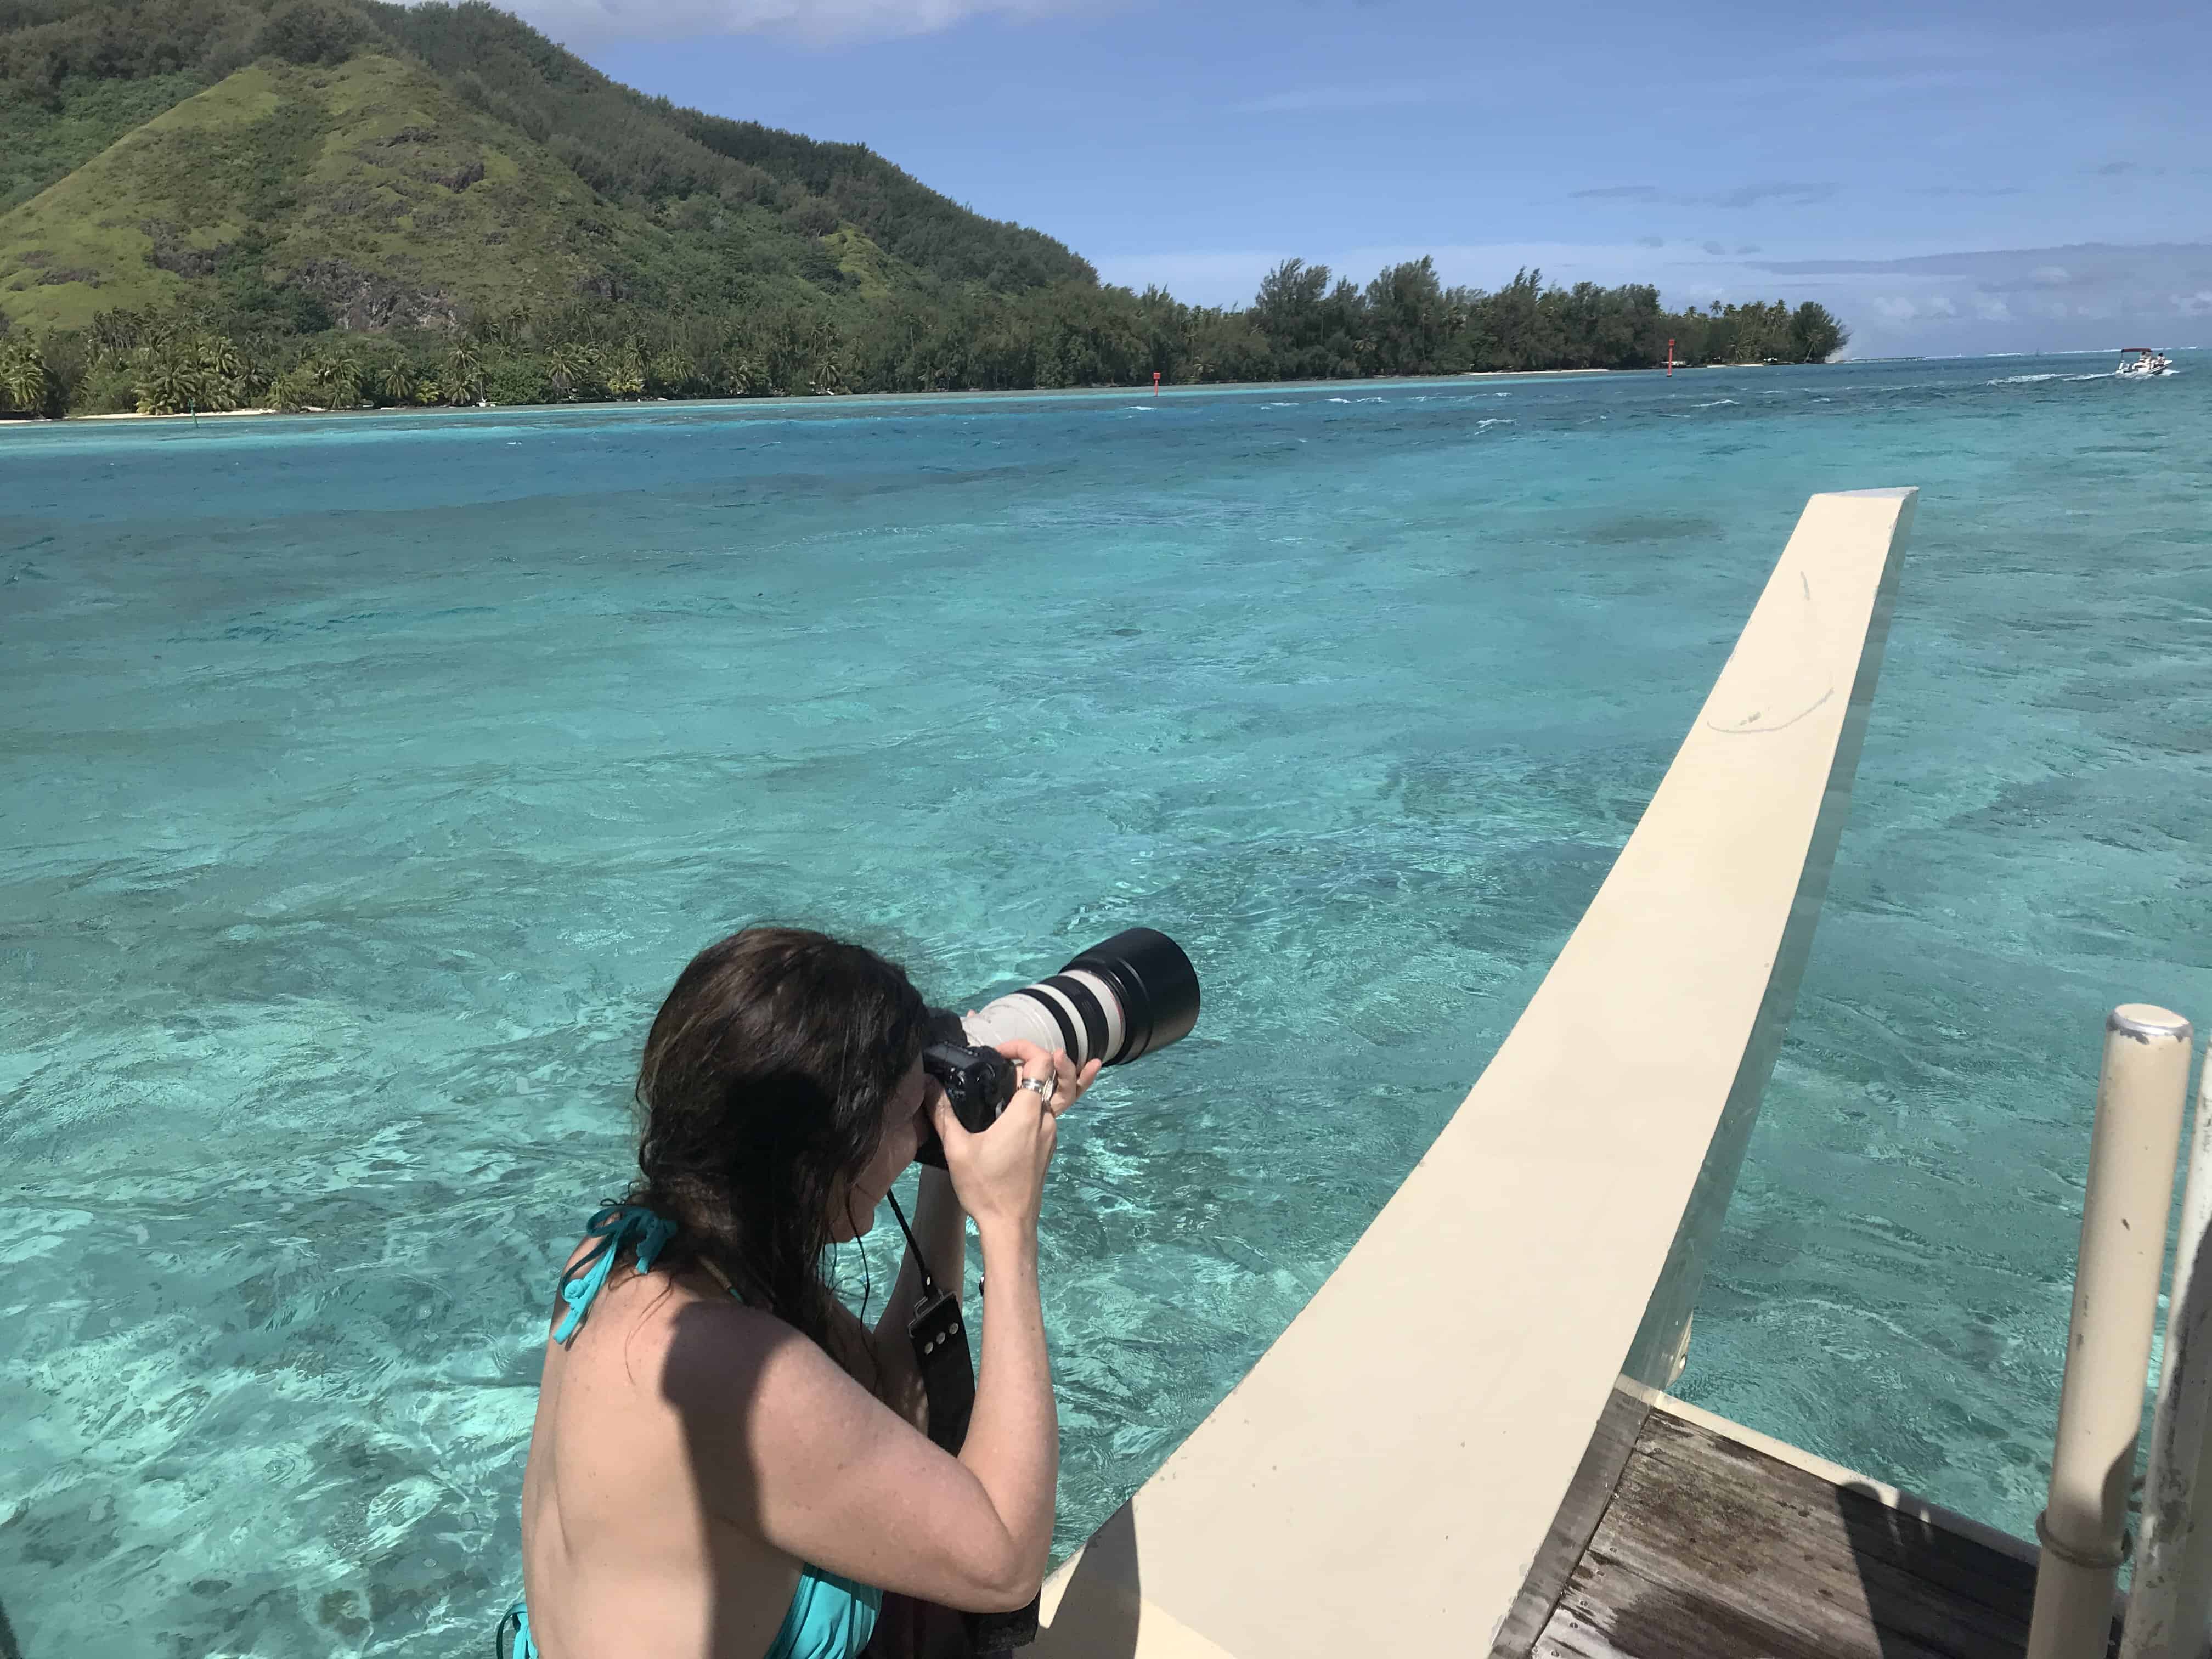 Tahiti travel guide for water